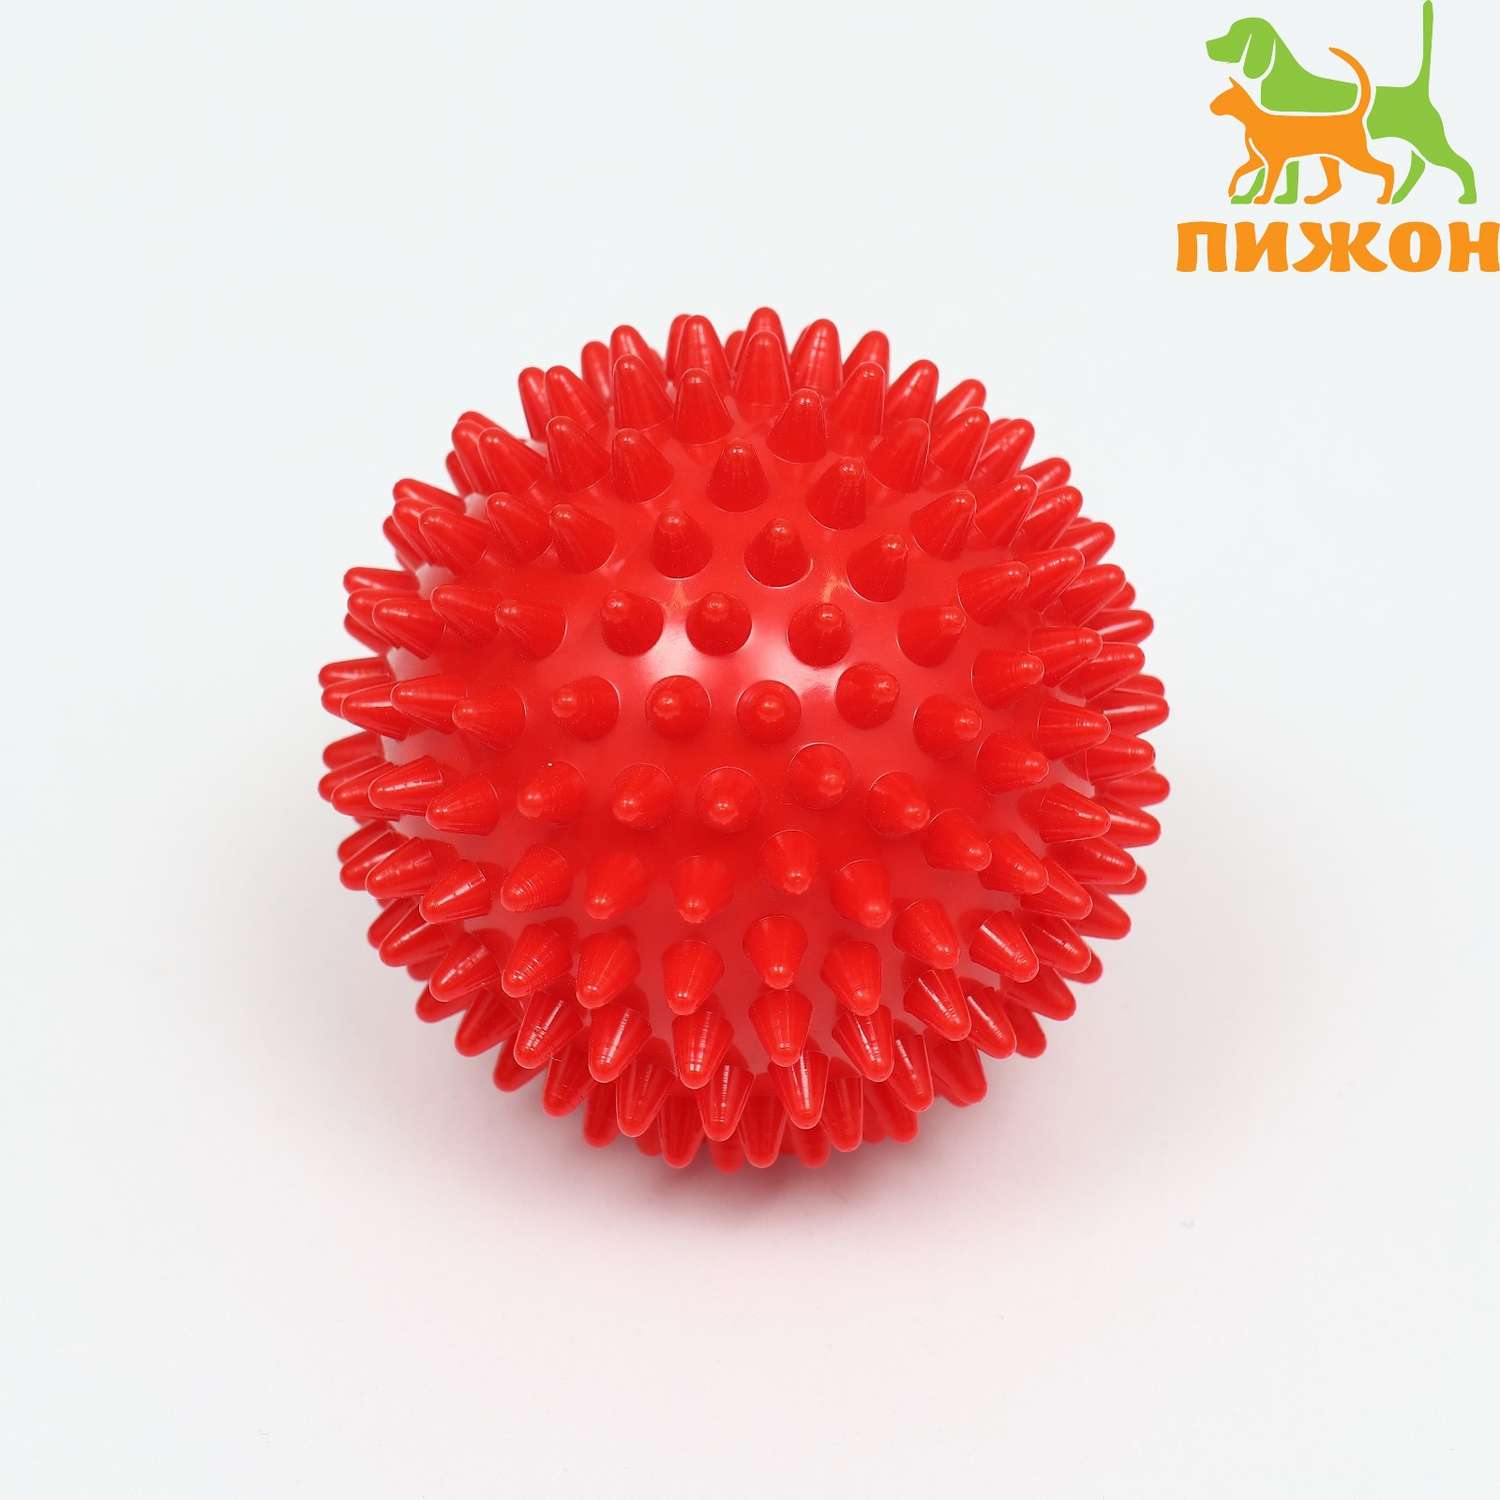 Игрушка Пижон «Мяч массажный» пластикат микс цветов 7.5 см - фото 1